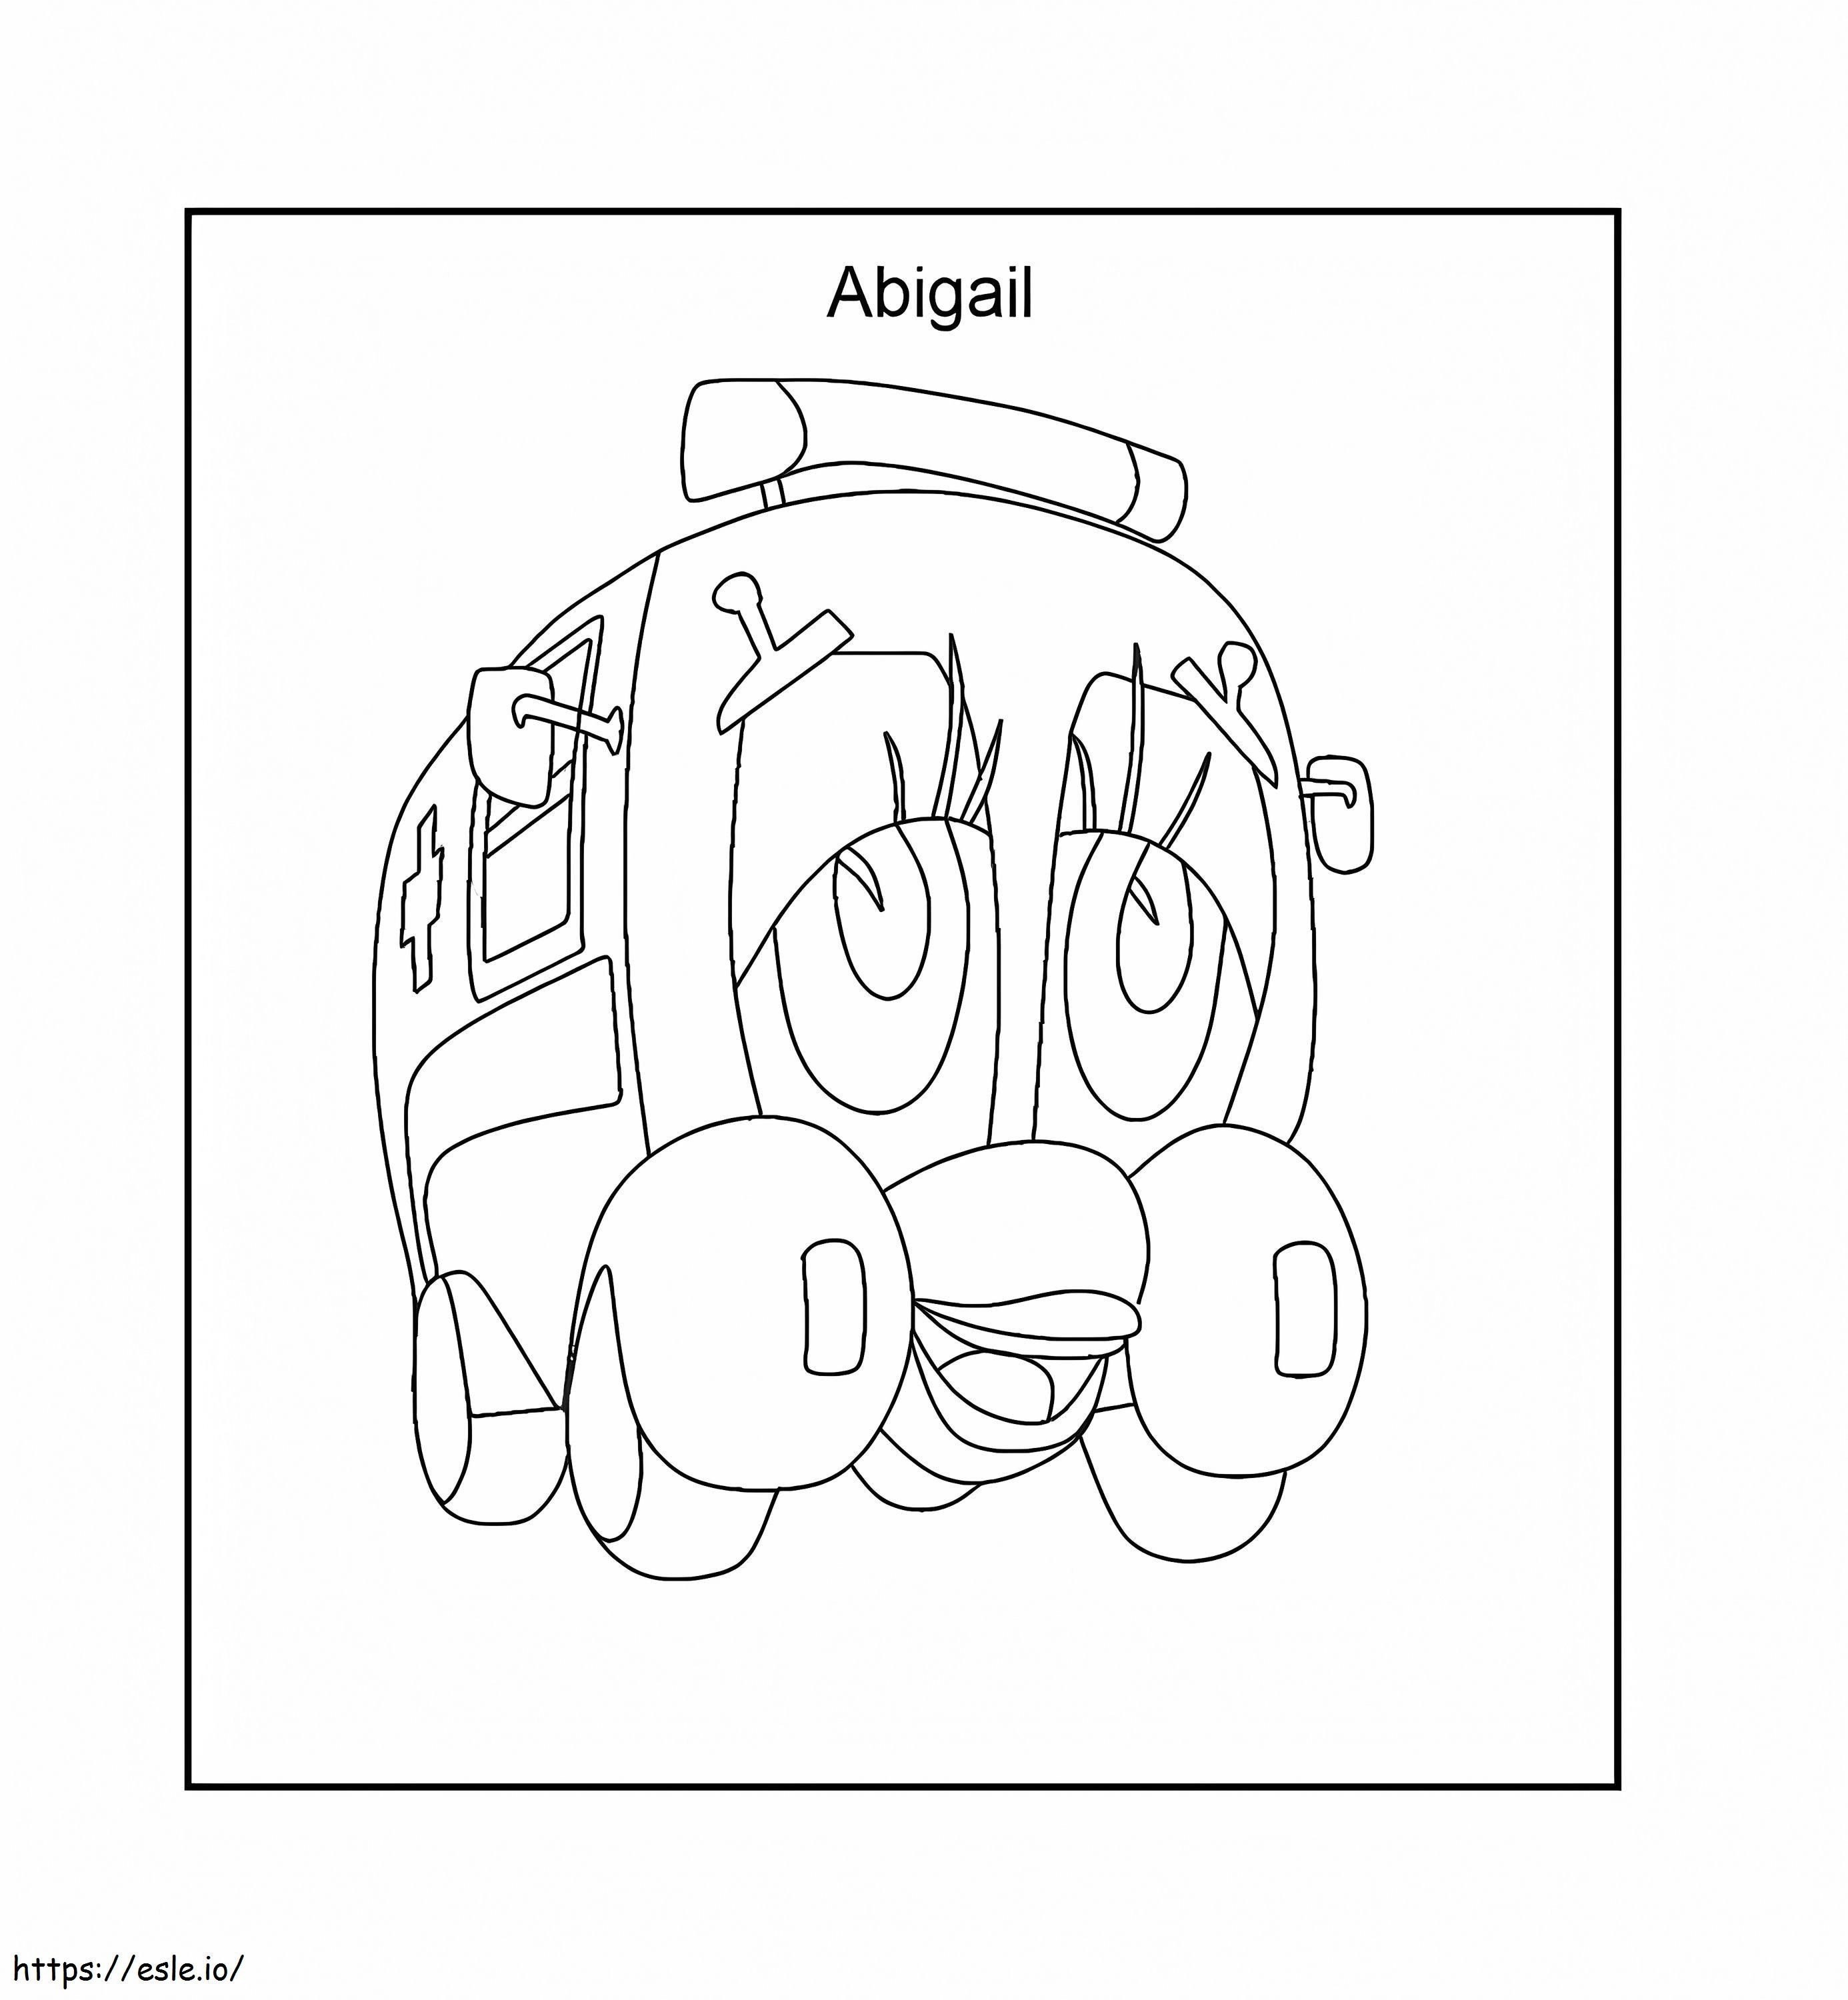 Ambulanța Abigail de colorat